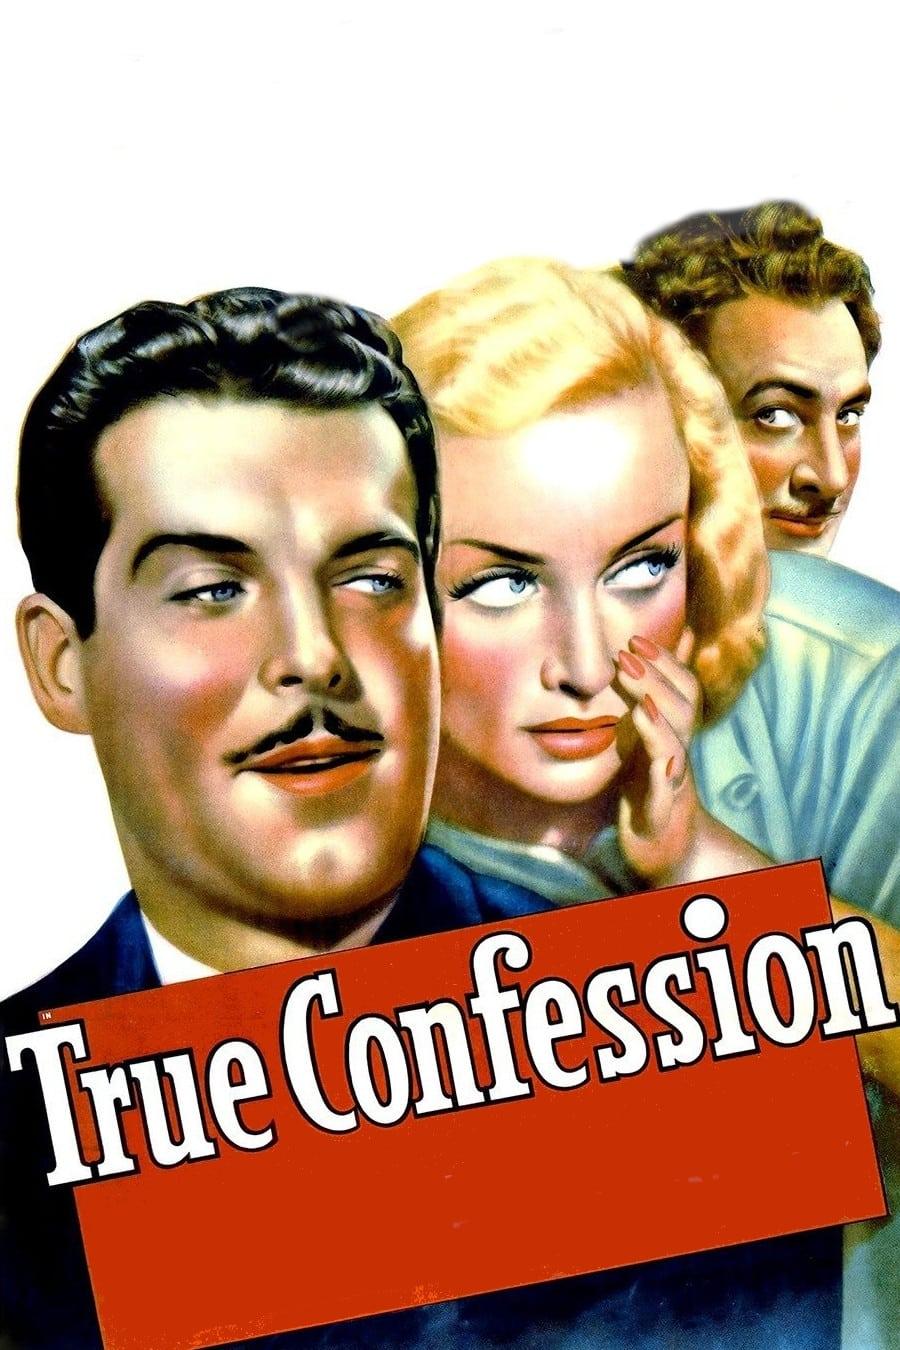 True Confession poster